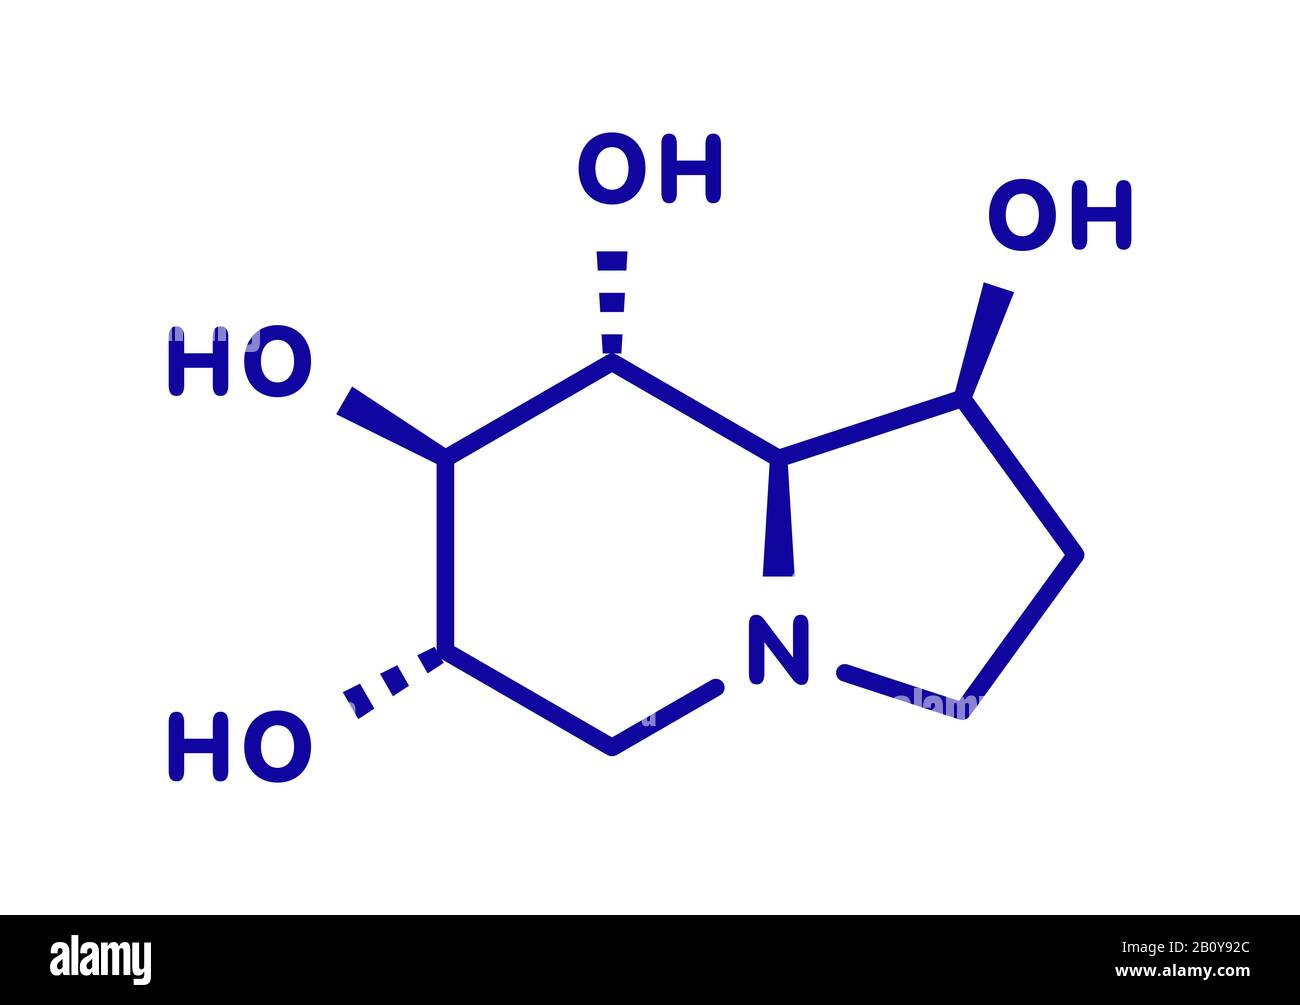 Castanospermine alkaloid molecule, illustration Stock Photo